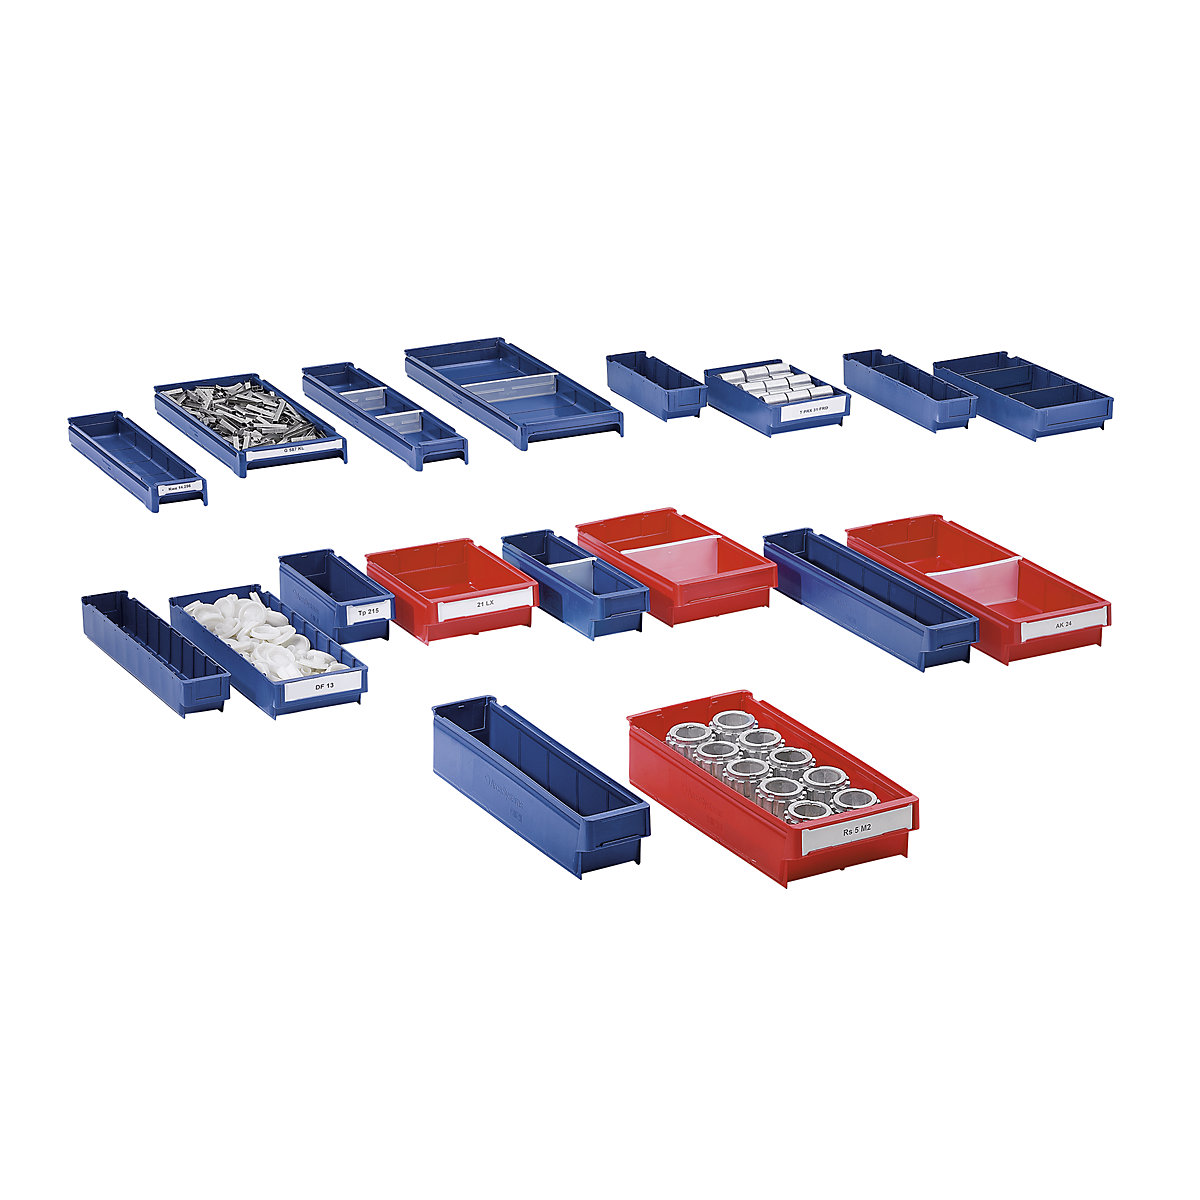 Caja de polipropileno para estanterías, azul, LxAxH 500 x 94 x 80 mm, UE 40 unidades-1